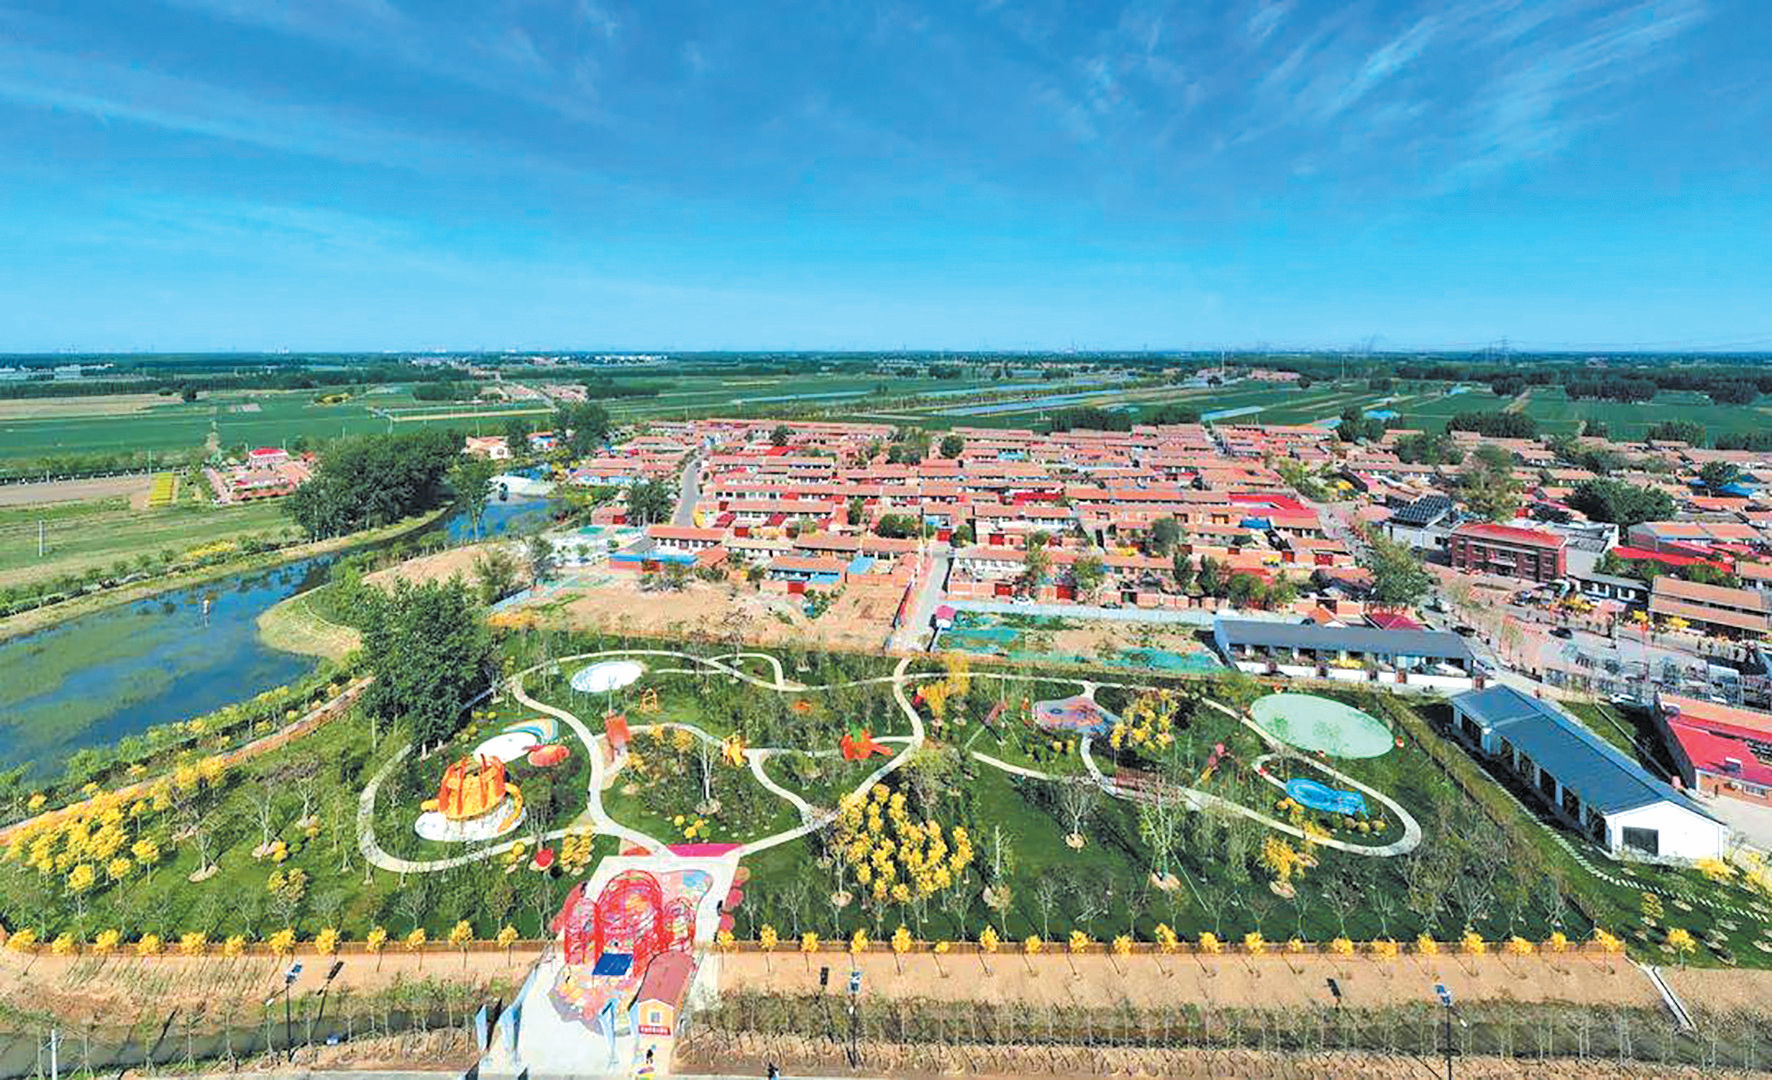 李大人庄村亲子主题乐园每年吸引众多游客前来“打卡”。